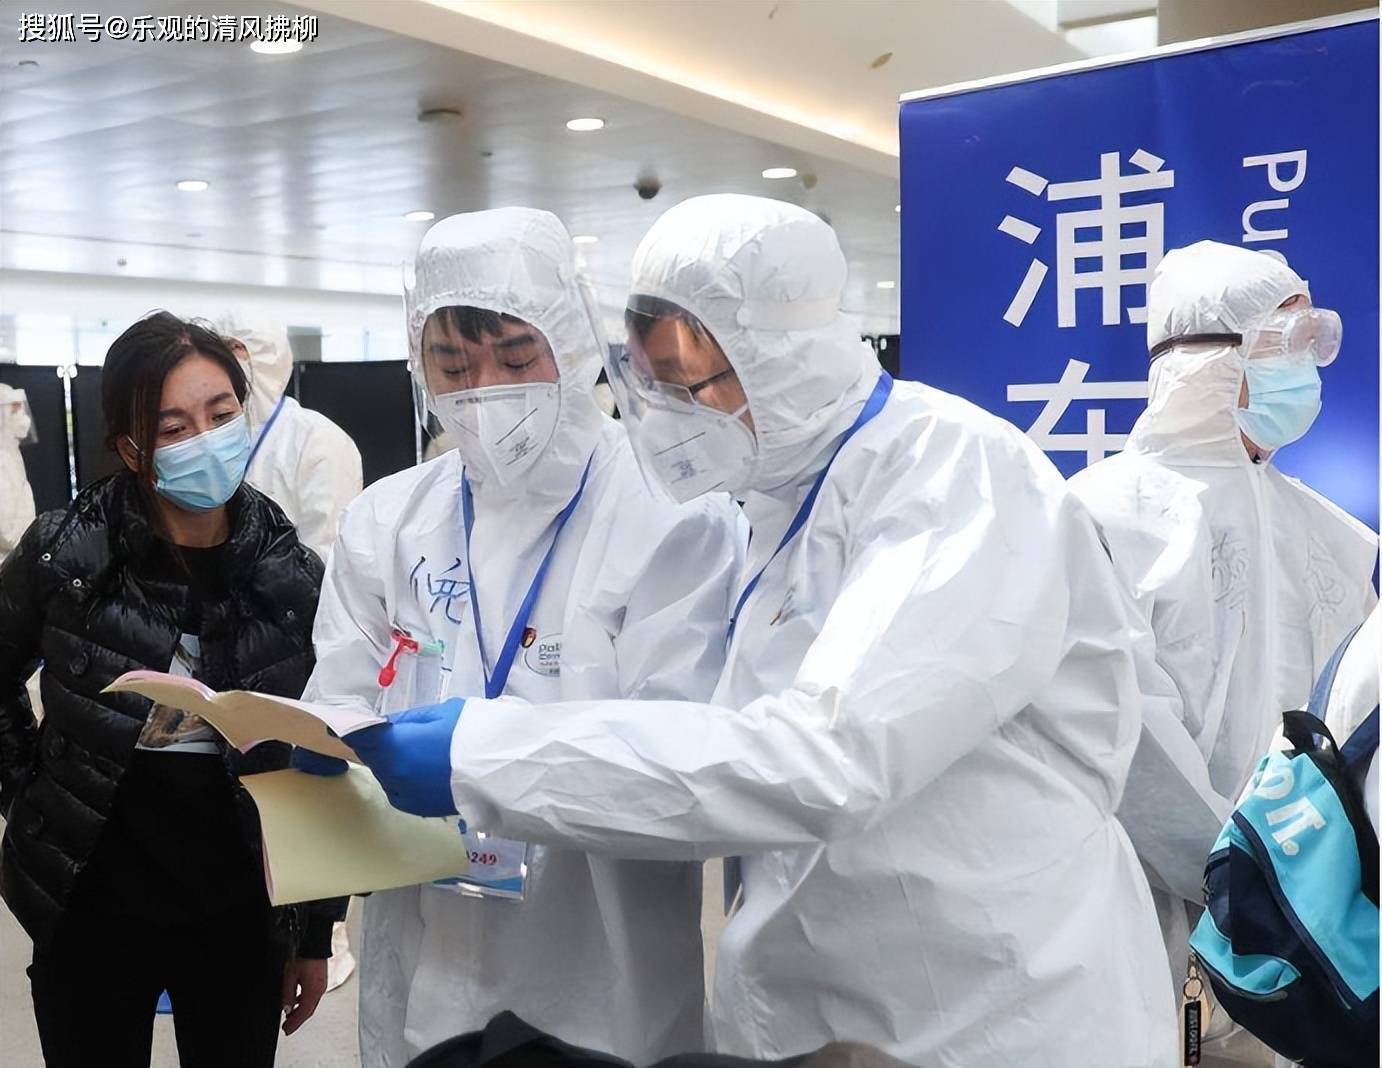 感染人数增加，为何上海却放宽措施不再查验核酸